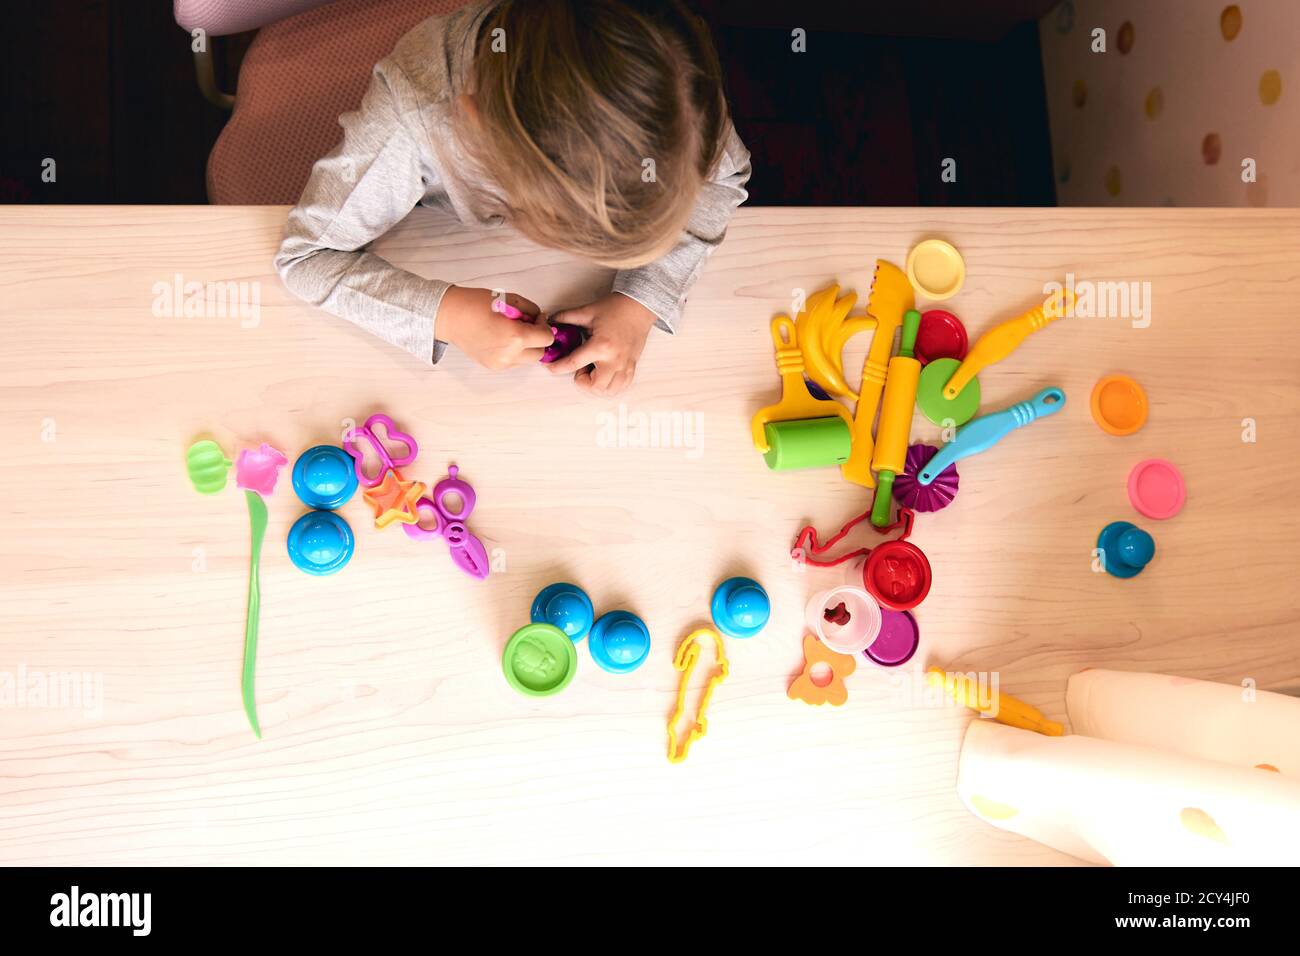 3 ans fille arts créatifs enfants mains jouant avec l'argile plaline colorée. Auto-isolation Covid-19, éducation en ligne, homeschooling. Petite fille Banque D'Images